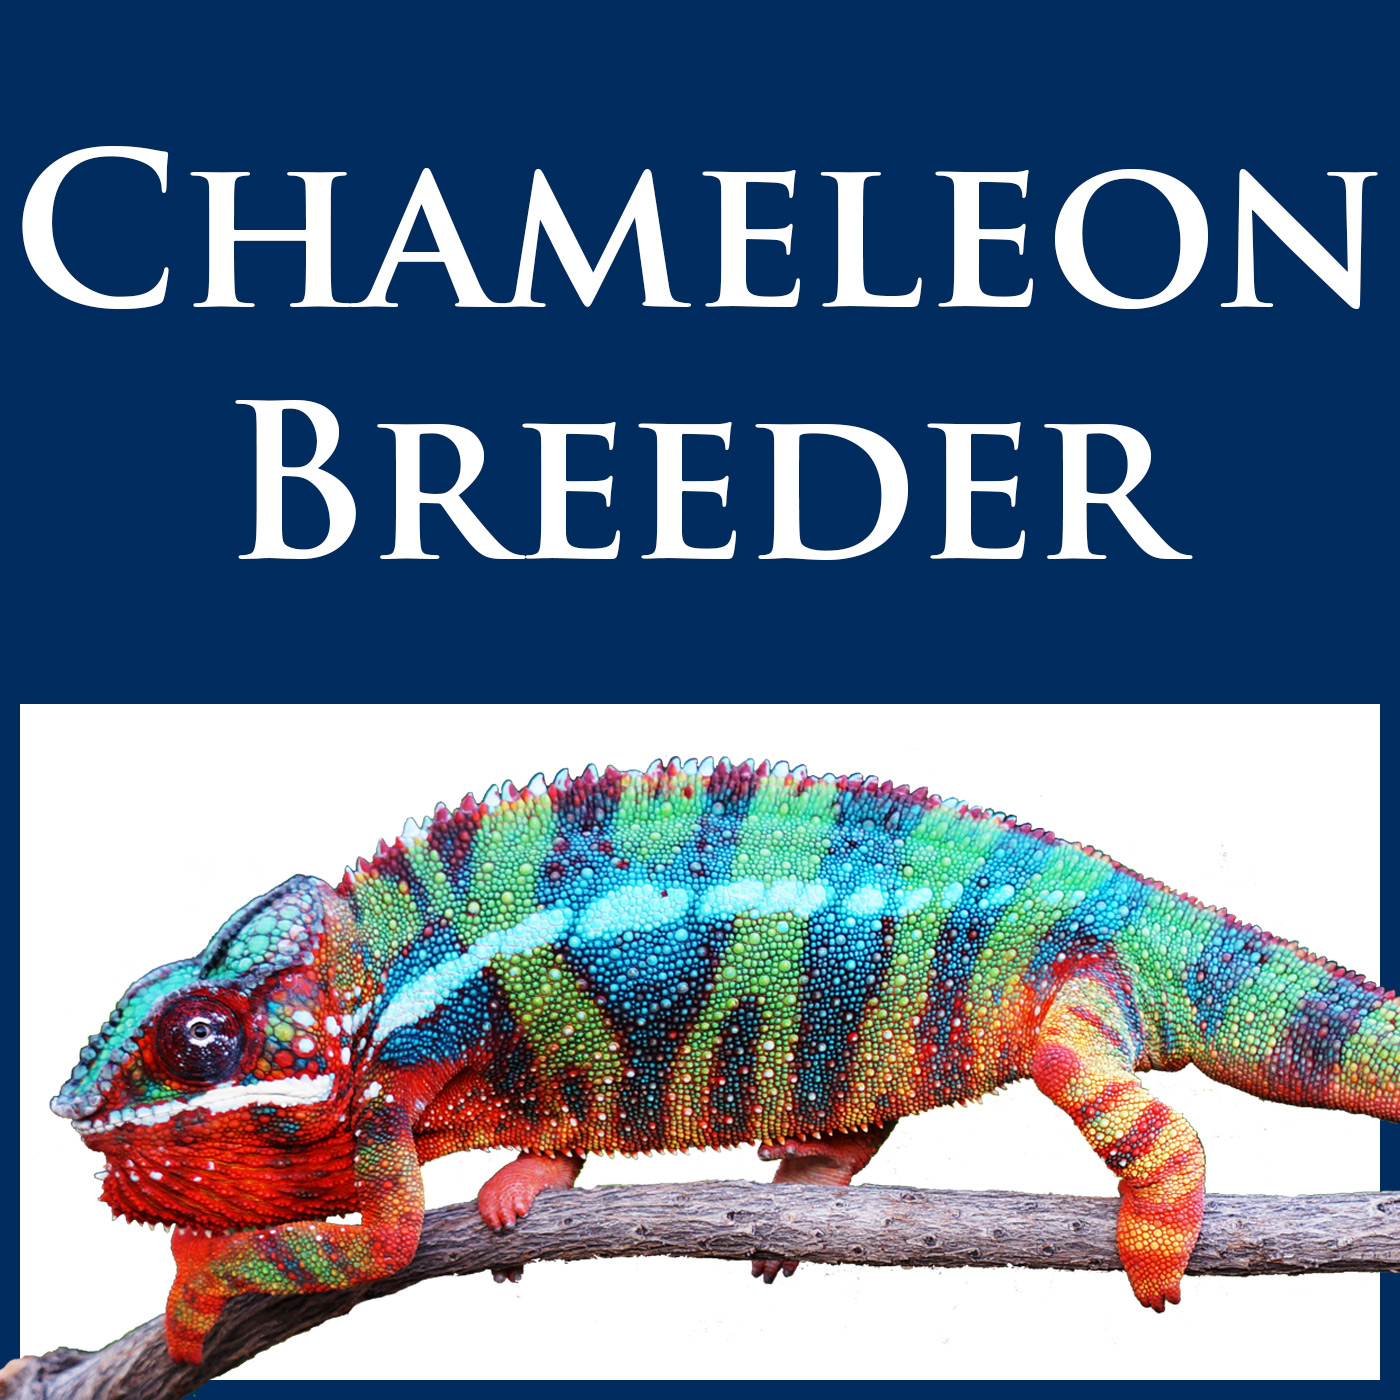 Carpet Chameleon Female Reptiles And Amphibians Colorful Lizards Amphibians